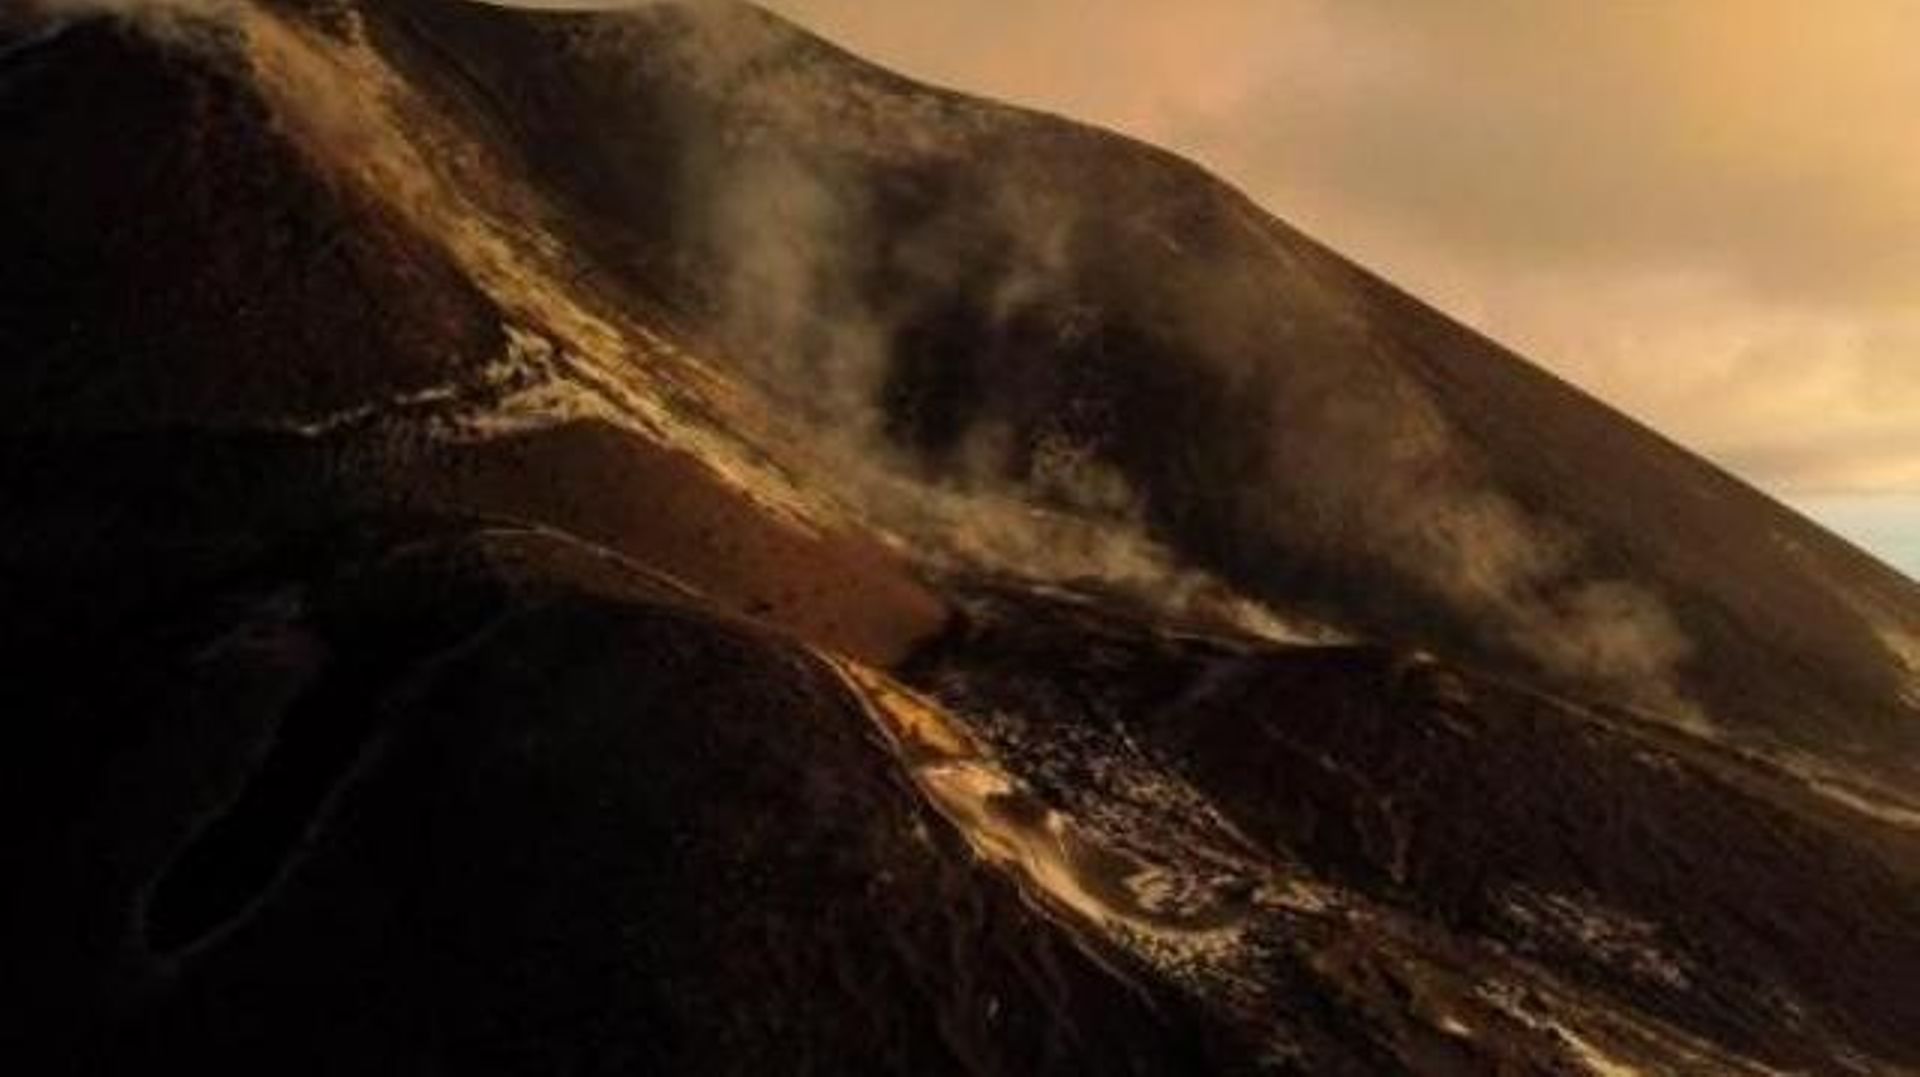 L'éruption du volcan de La Palma officiellement terminée